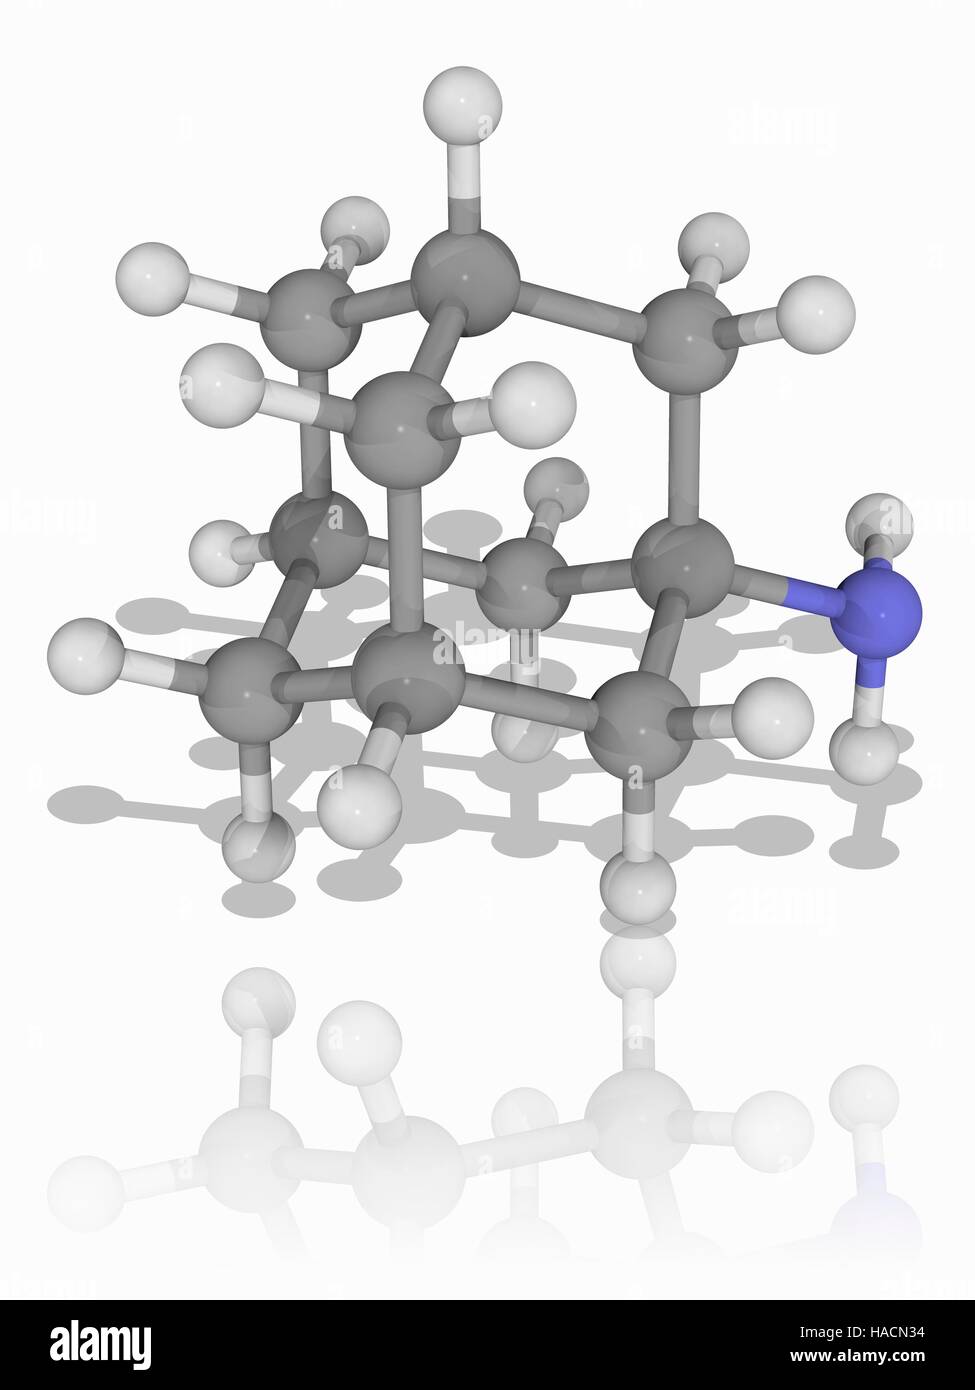 Amantadin. Molekulares Modell des Medikament Amantadin (C10. H17. (N), als eine antivirale Medikament und in Fällen der Parkinson-Krankheit eingesetzt. Atome als Kugeln dargestellt werden und sind farblich gekennzeichnet: Kohlenstoff (grau), Wasserstoff (weiß) und Stickstoff (blau). Abbildung. Stockfoto